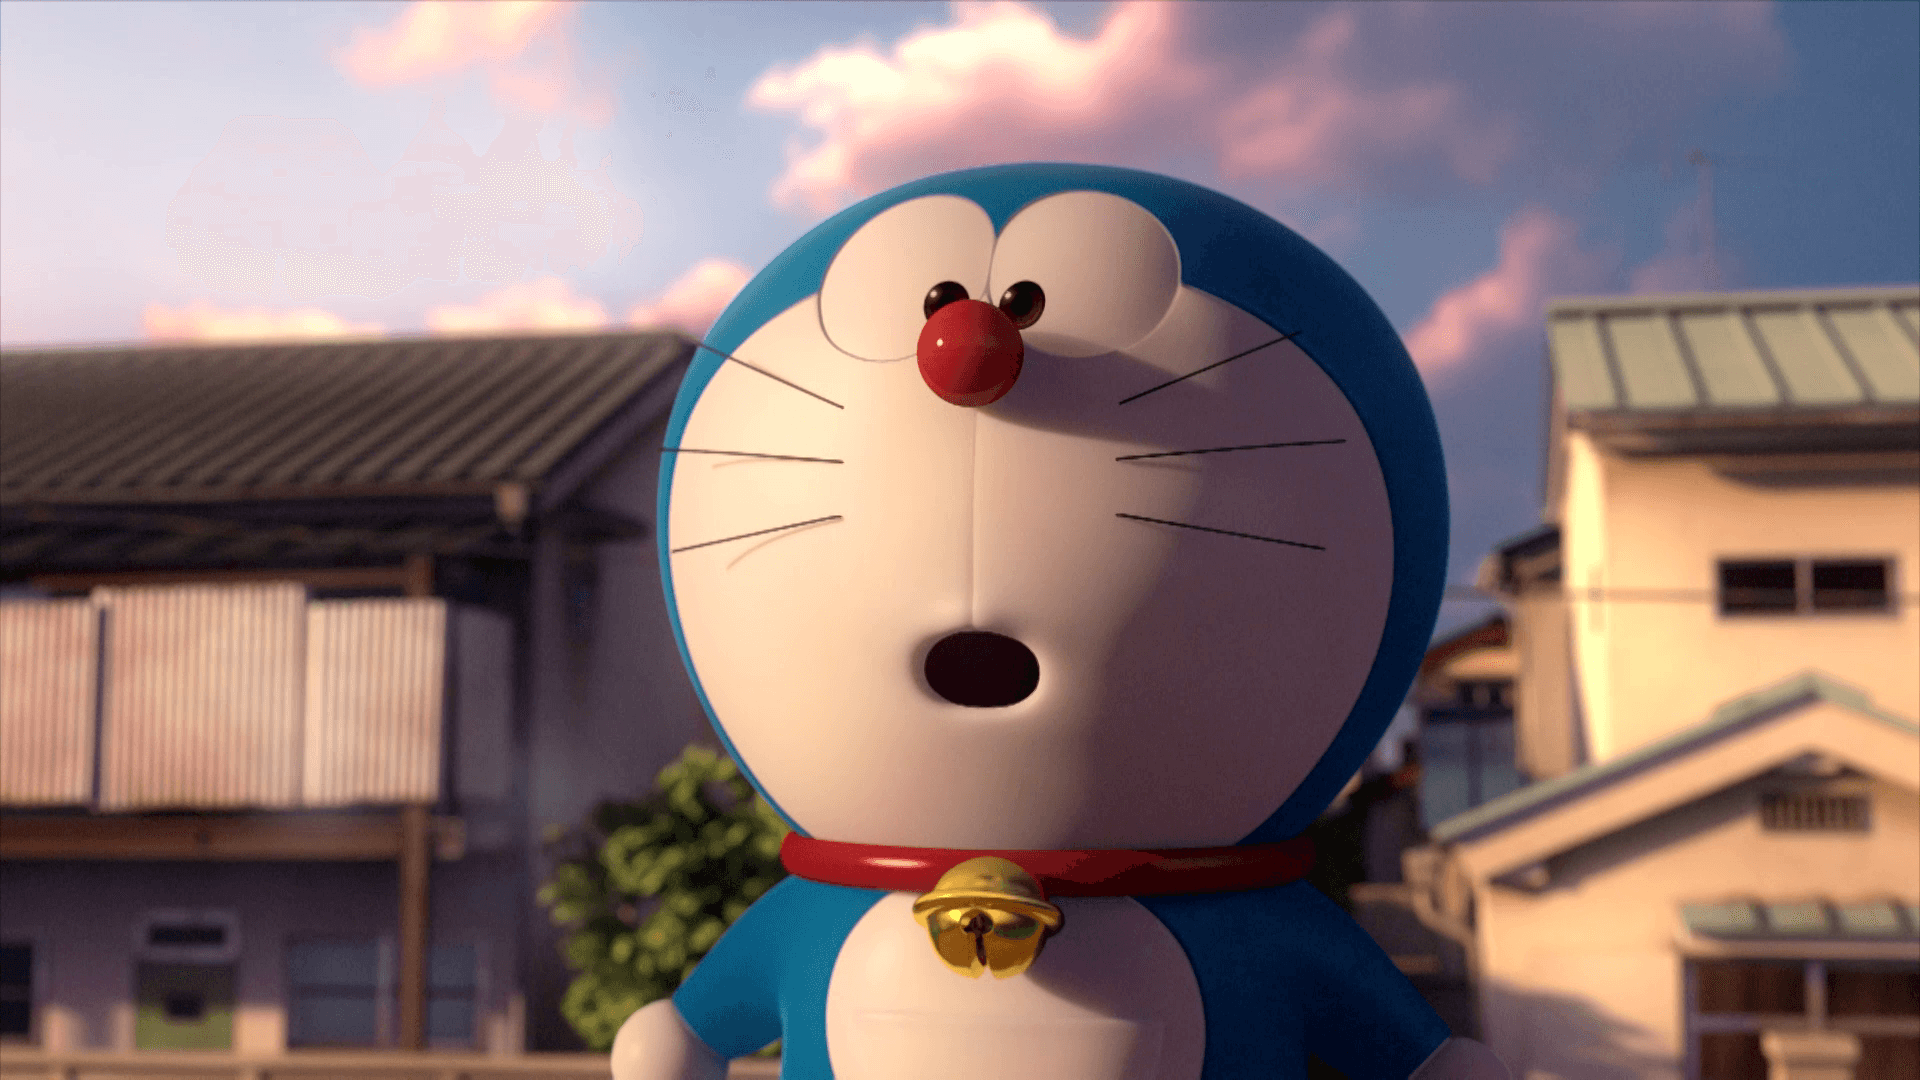 Doraemonbakgrund